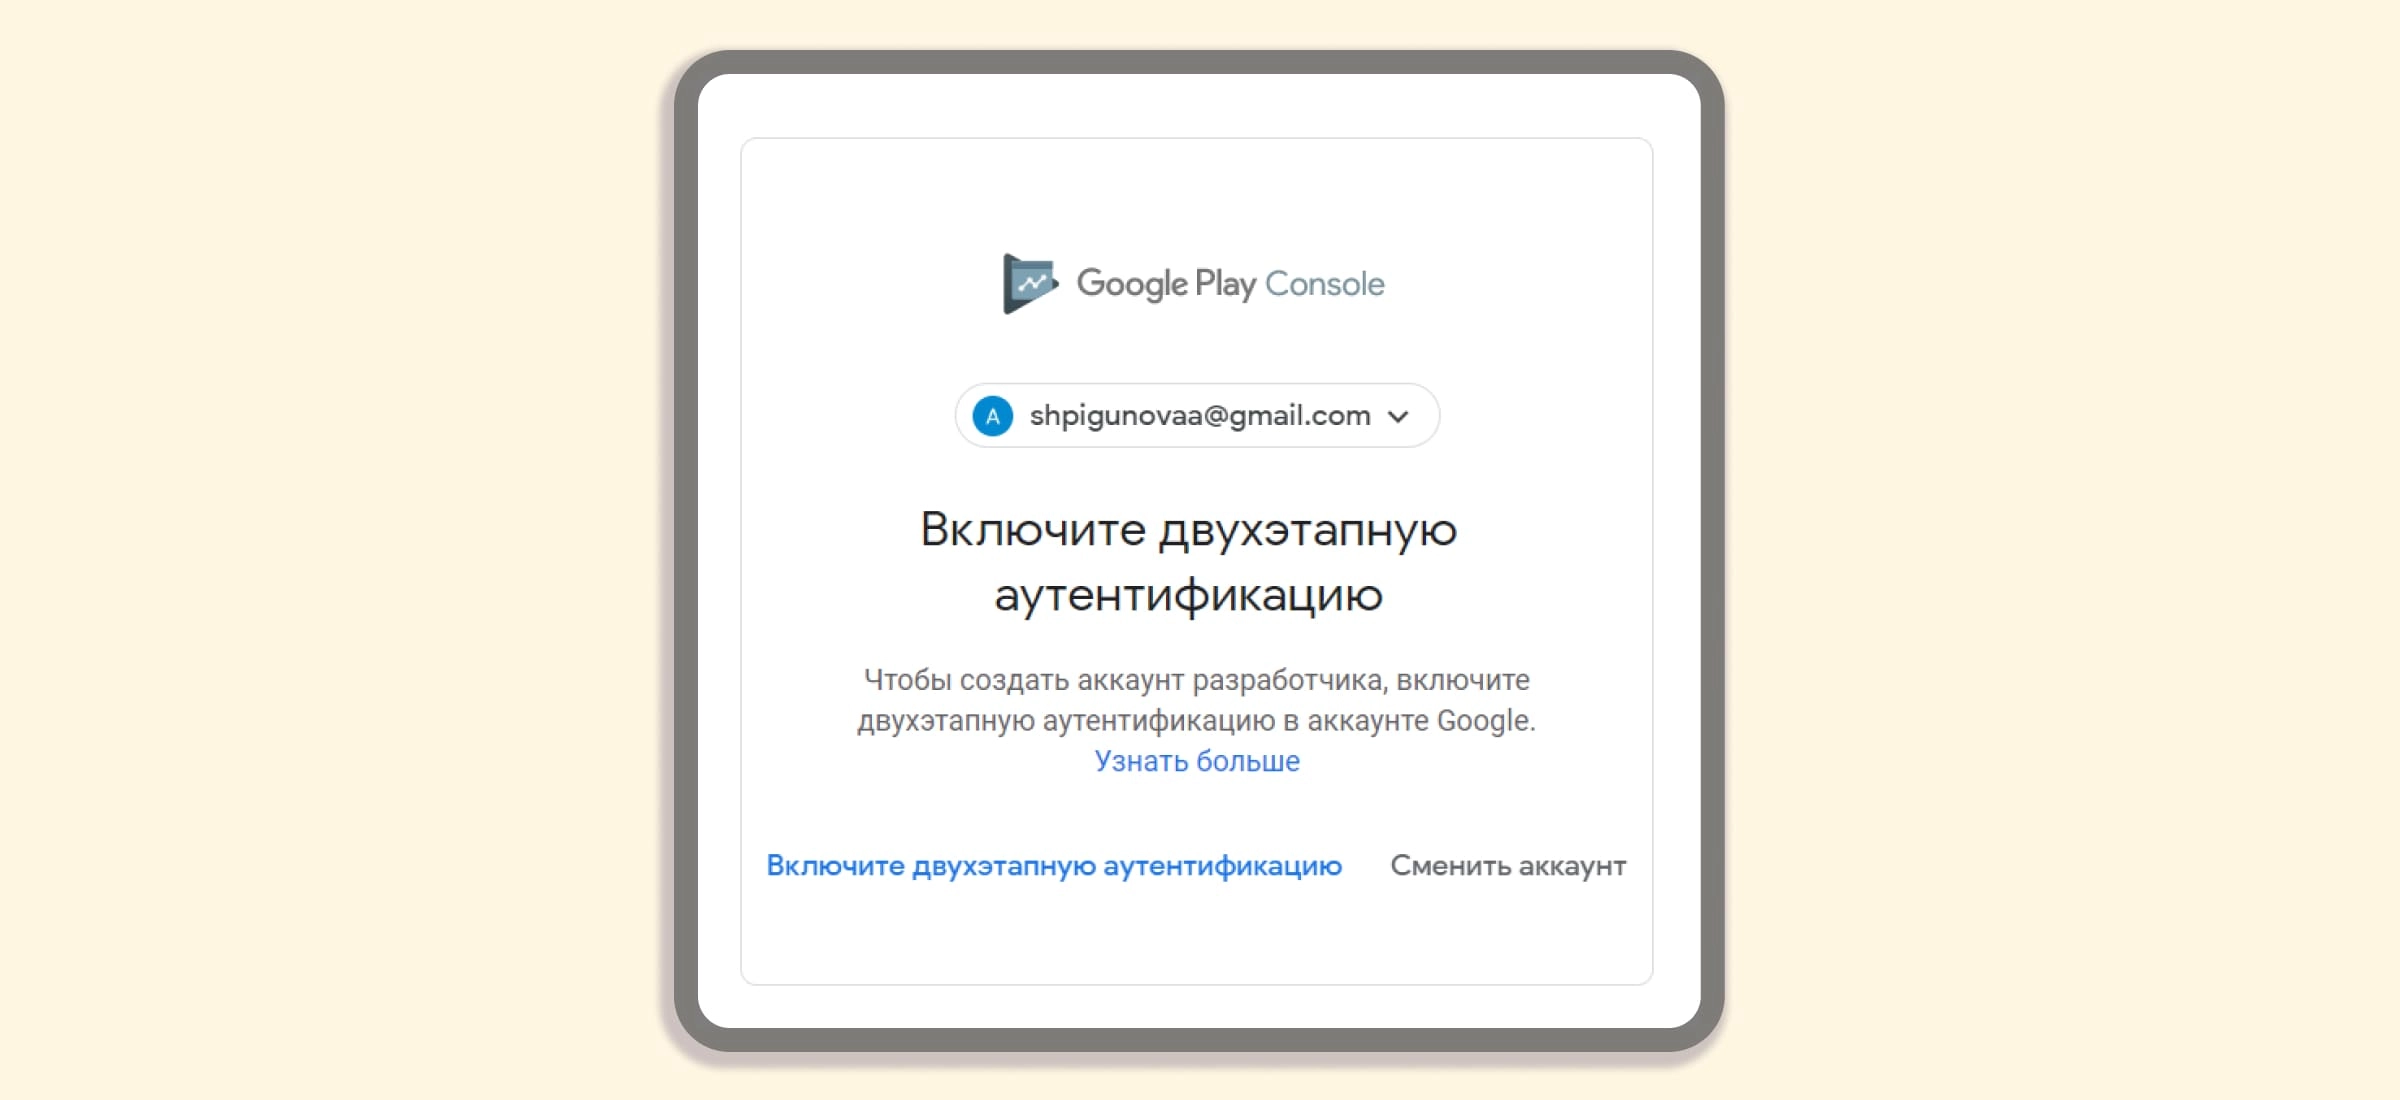 Как правильно создать аккаунт в Google Play?